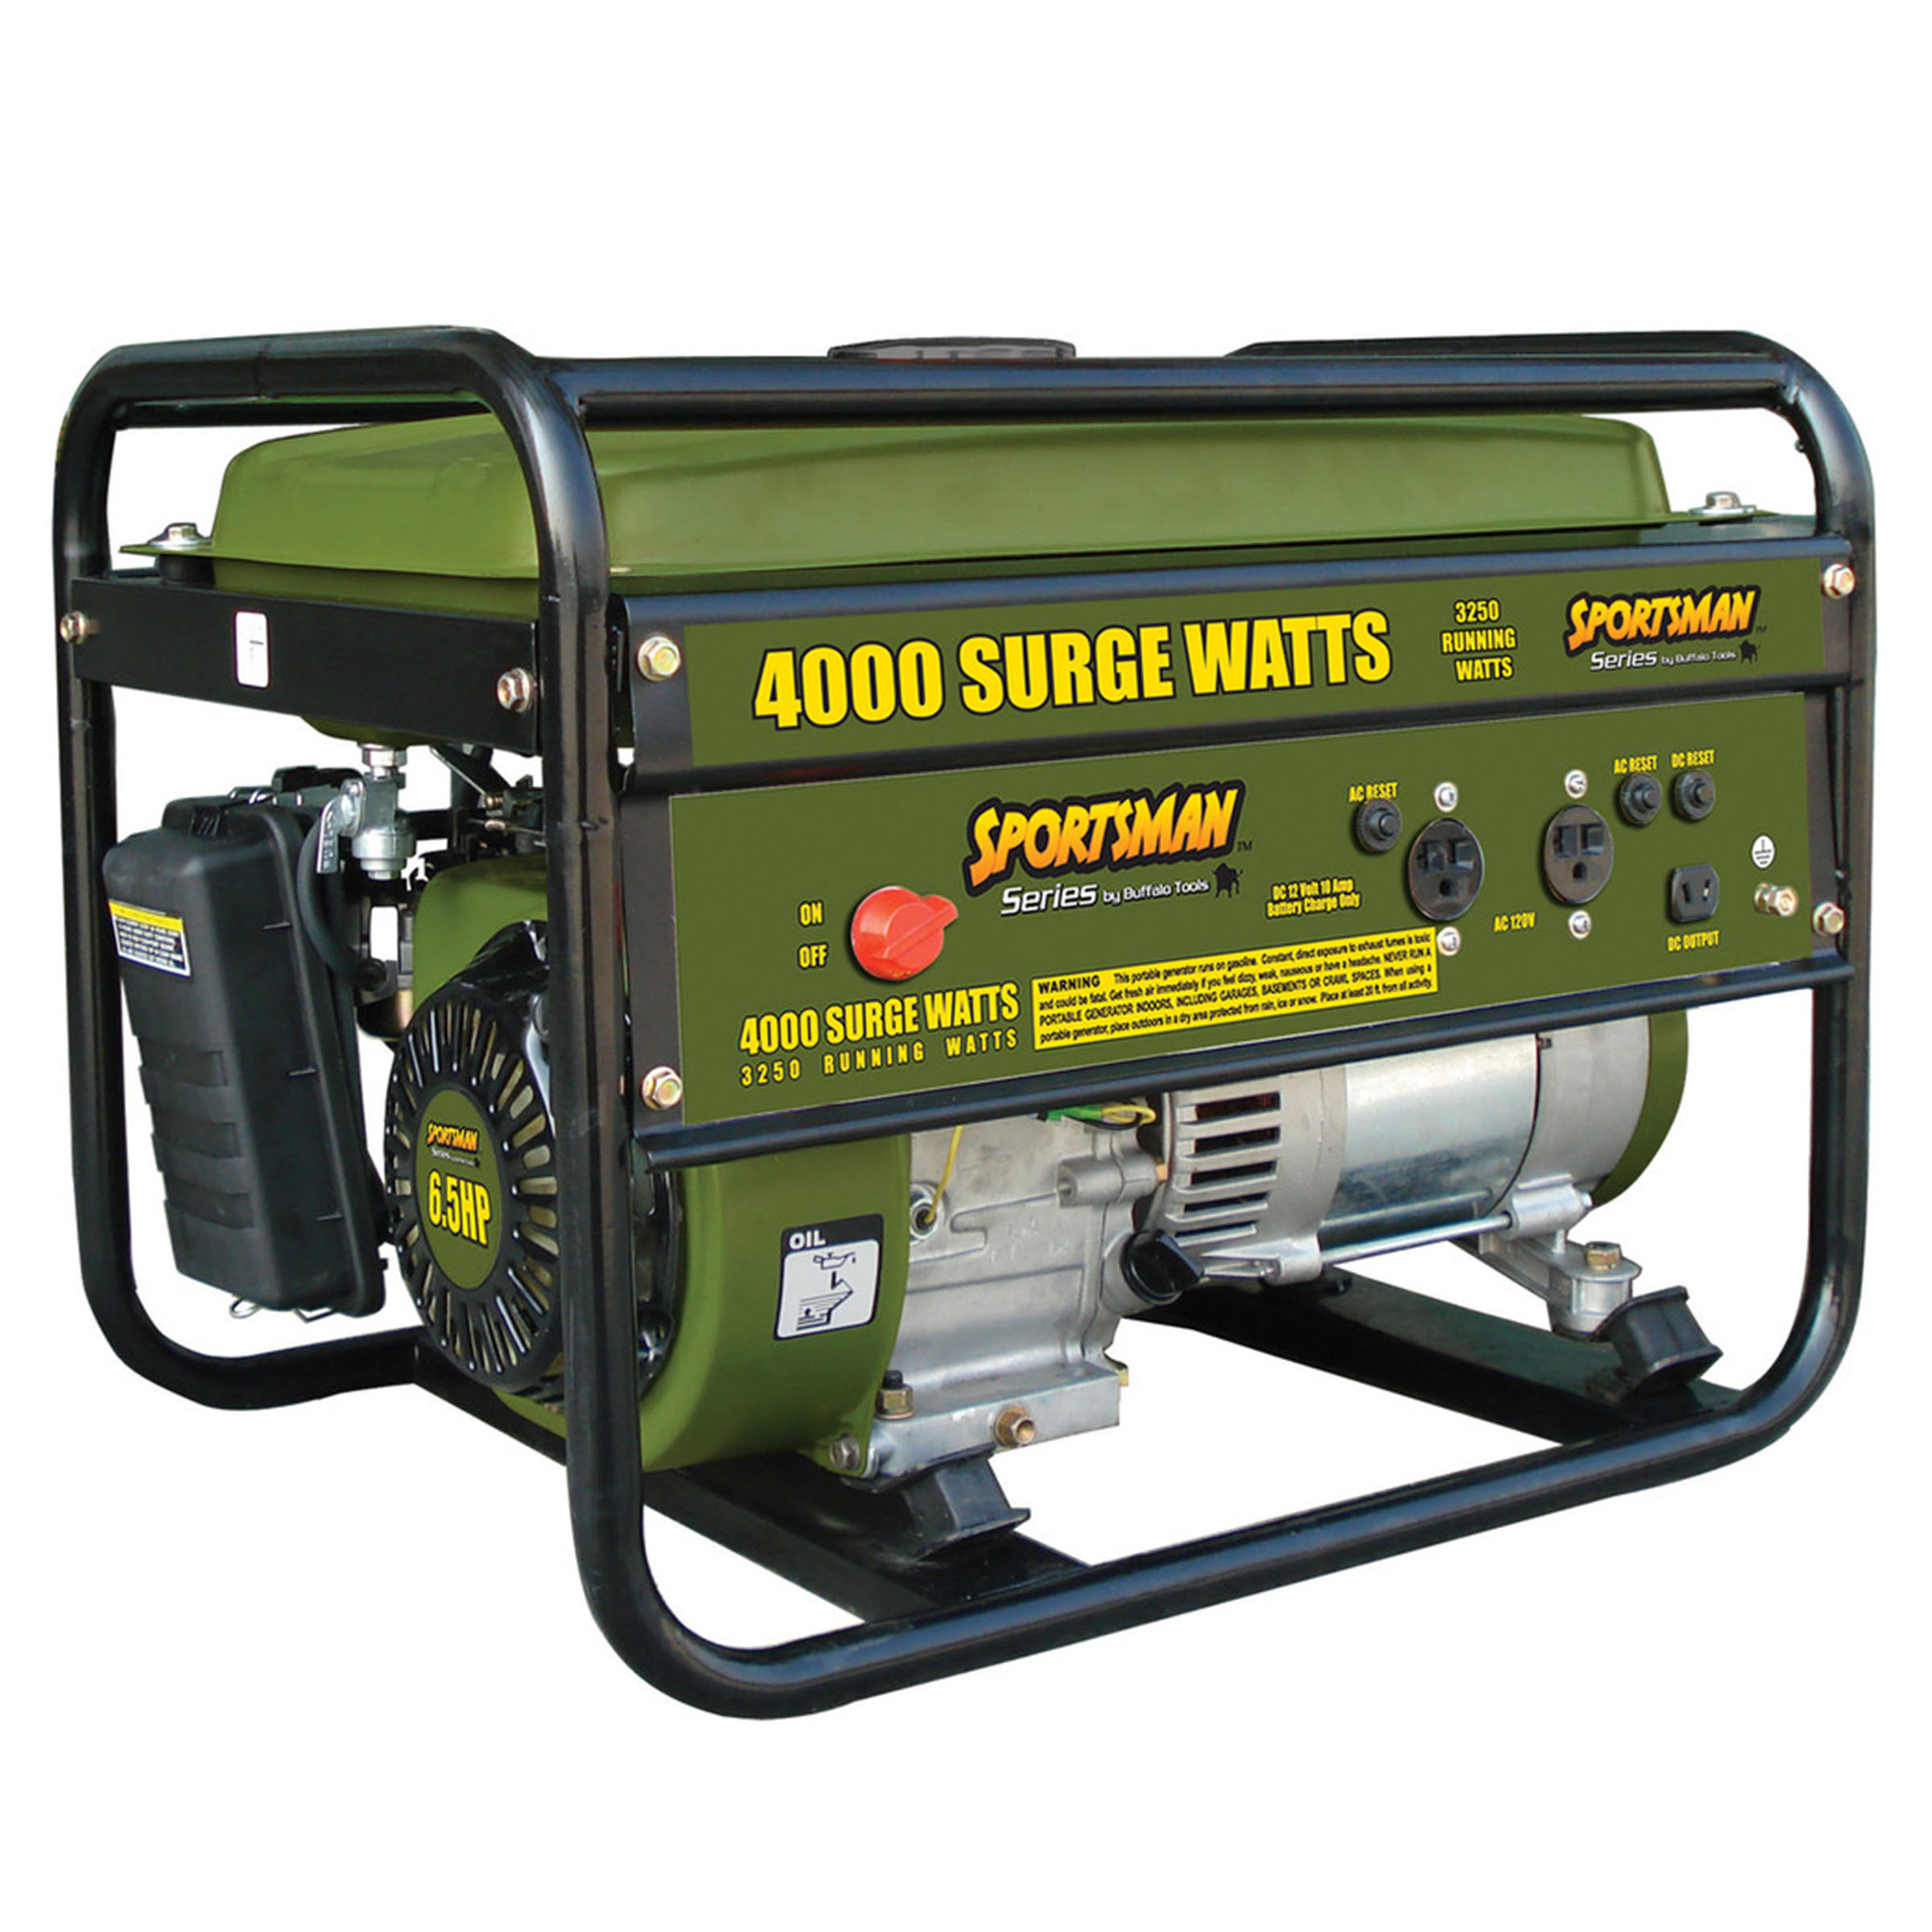 Sportsman 4000 Watt Generator – GEN4065 – 939477
